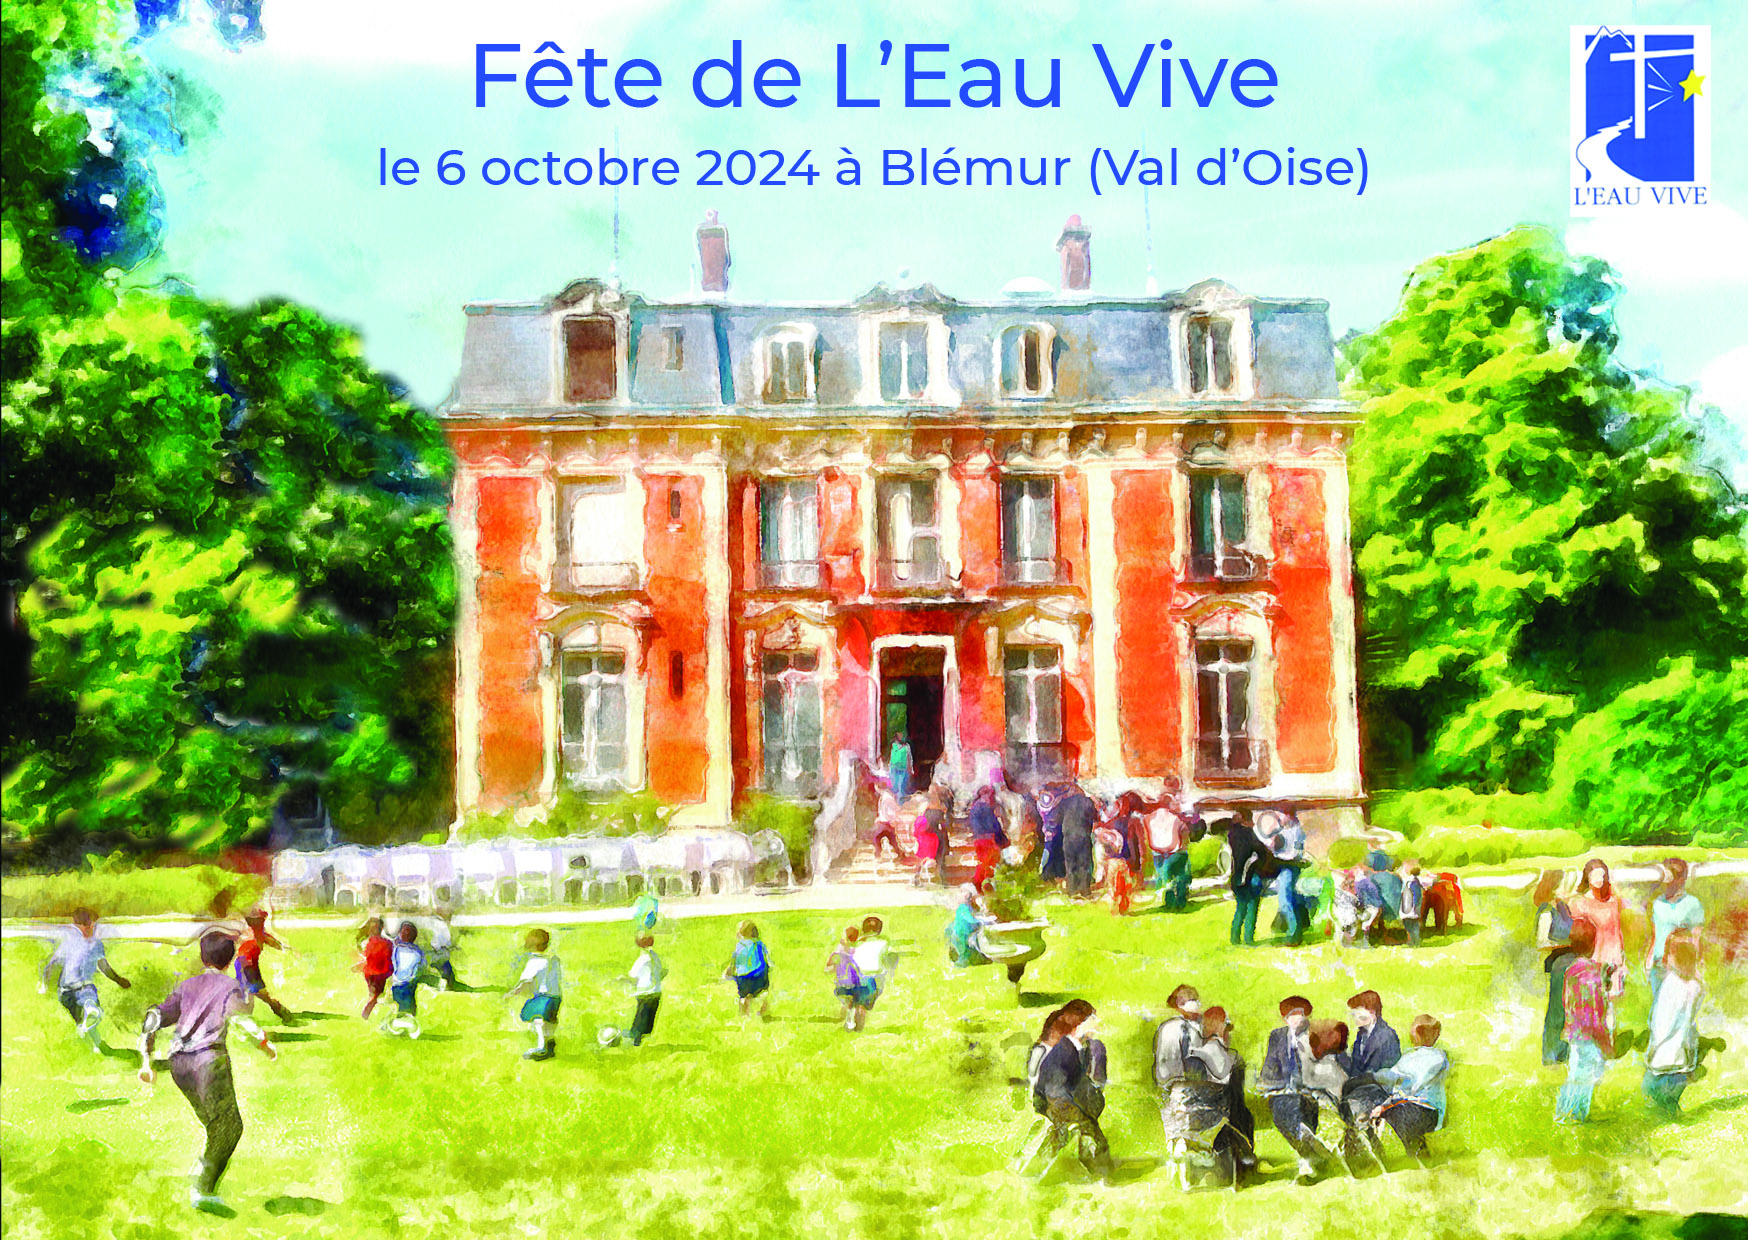 Fête de l'Eau Vive le 6 octobre 2024 à Blémur (Val d'Oise)